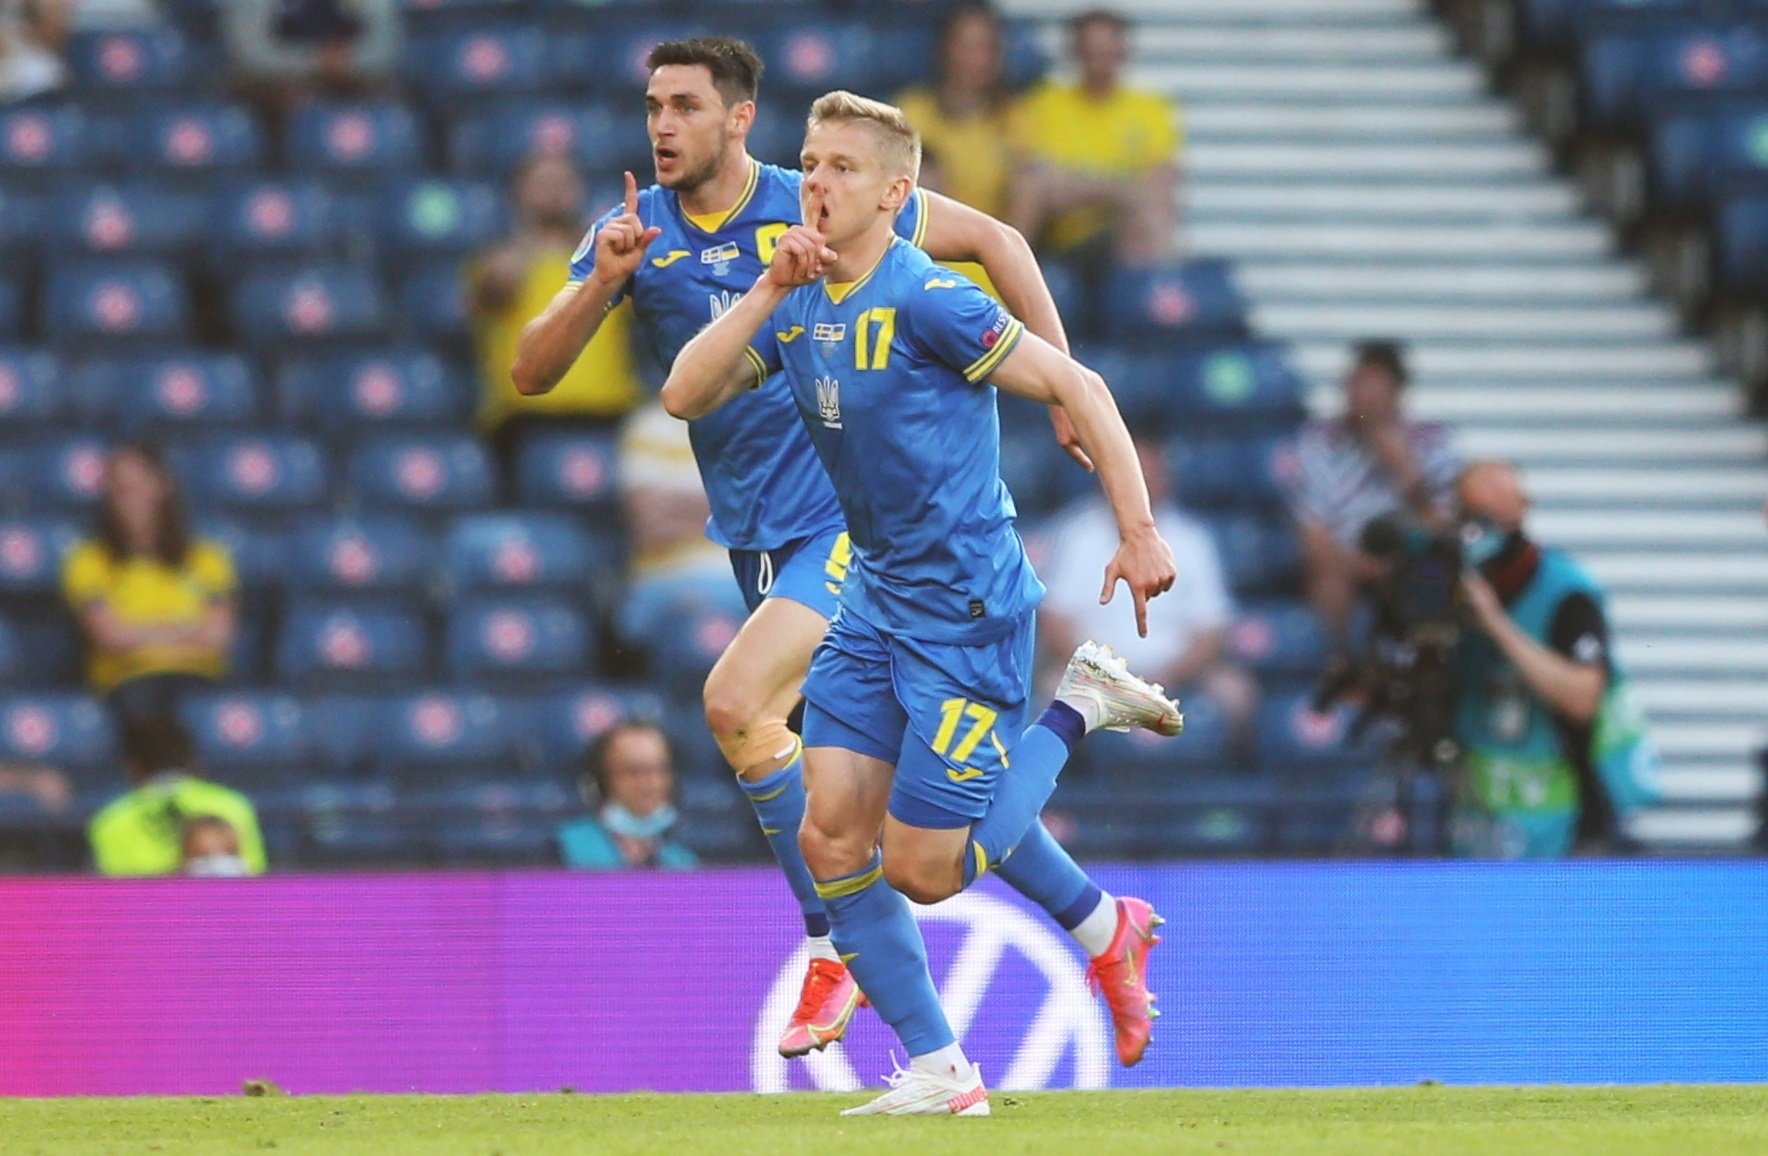 Ucrania silencia el sueño sueco y hace historia al pasar a cuartos (1-2)